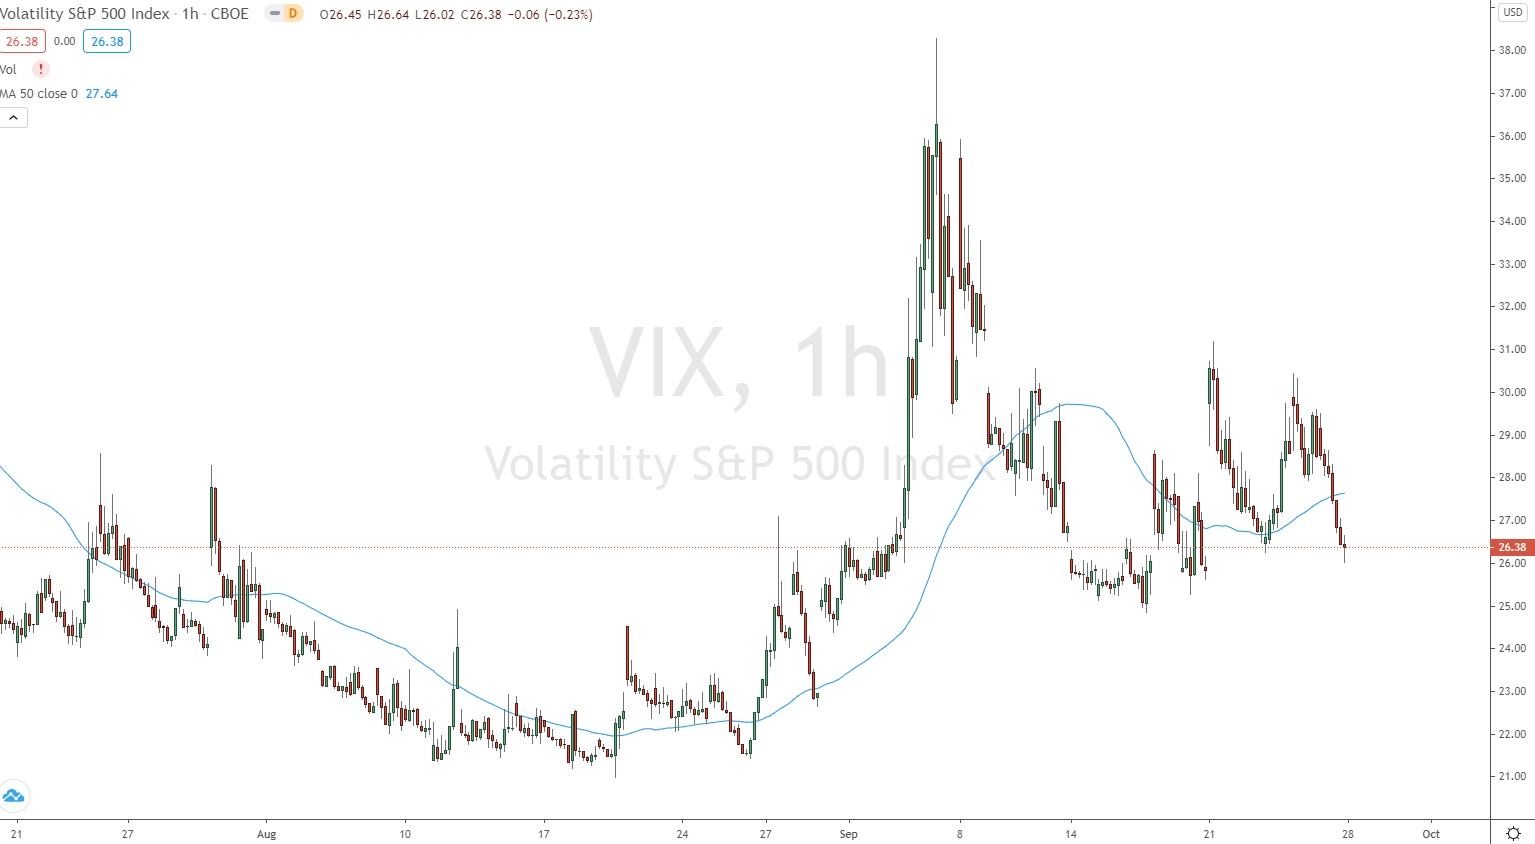 VIX zeigt die Volatilität des Markets